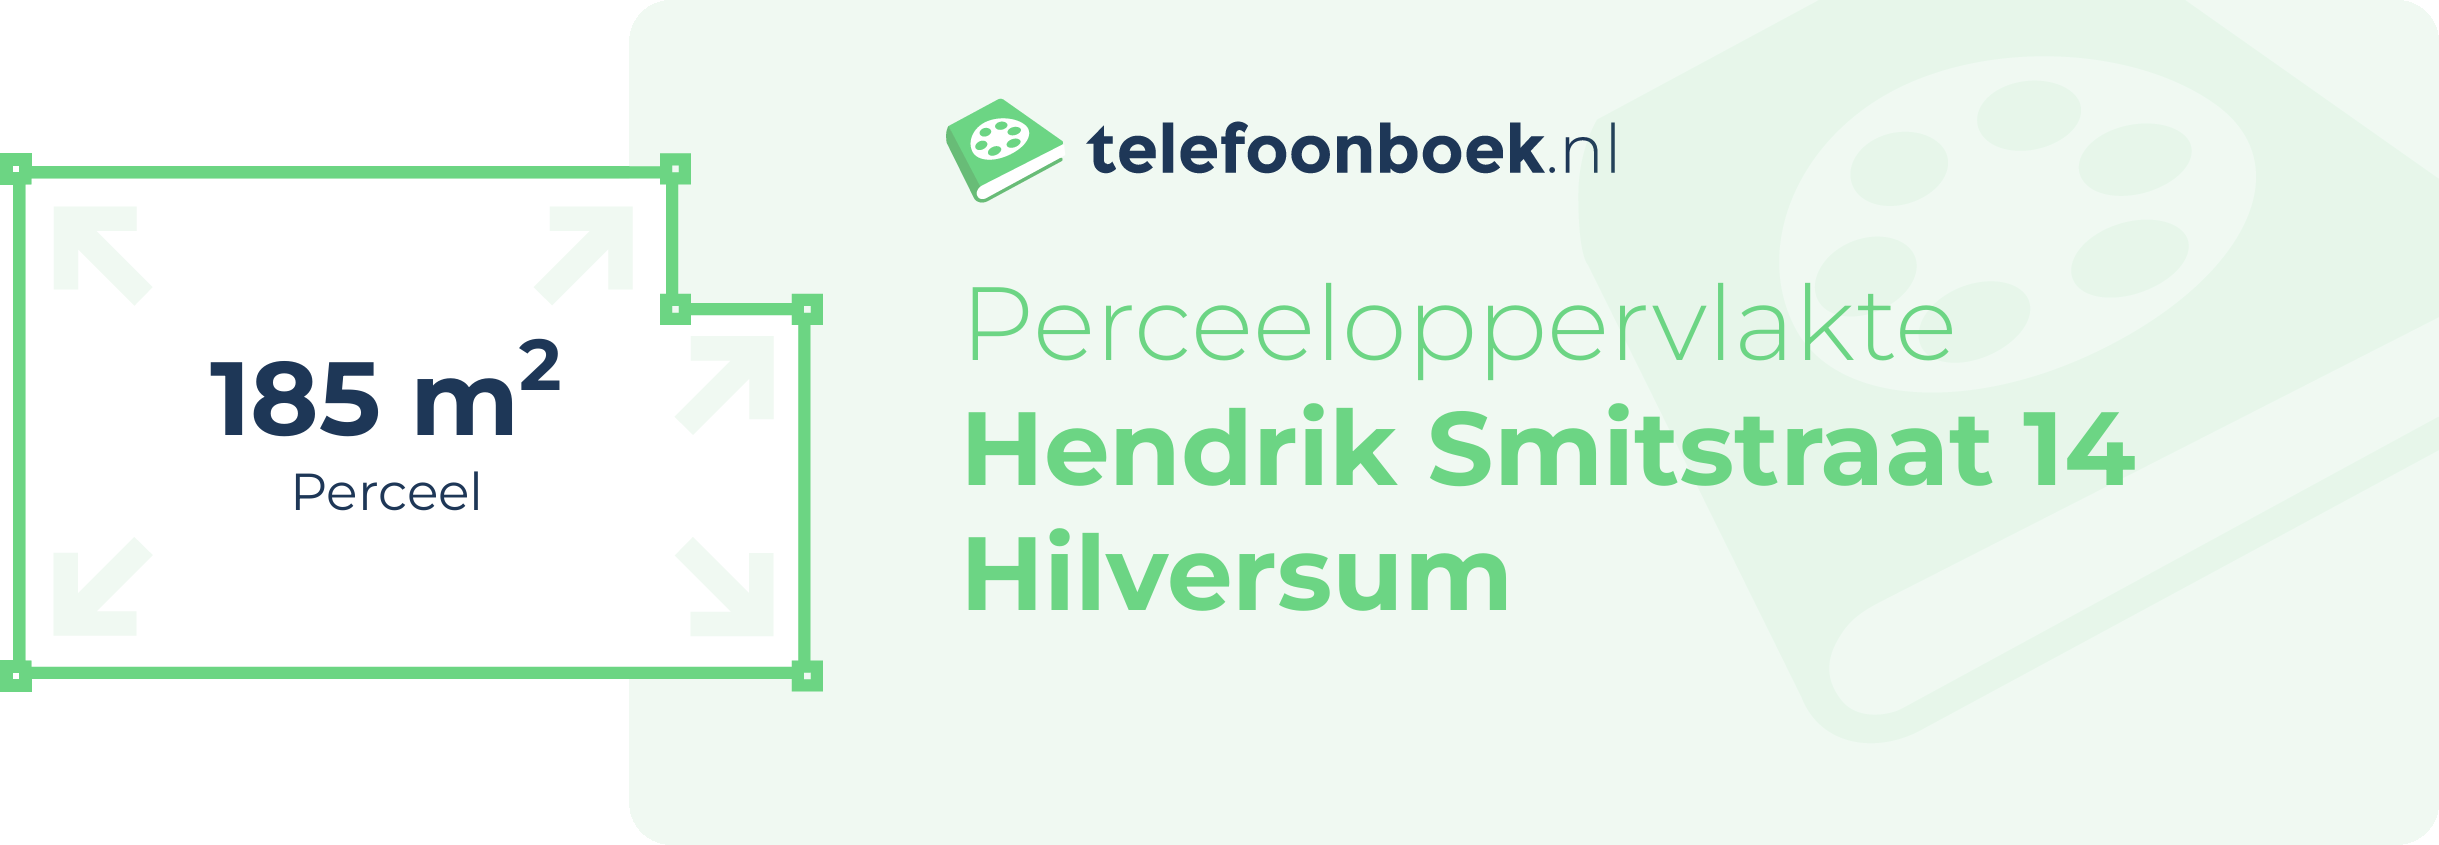 Perceeloppervlakte Hendrik Smitstraat 14 Hilversum